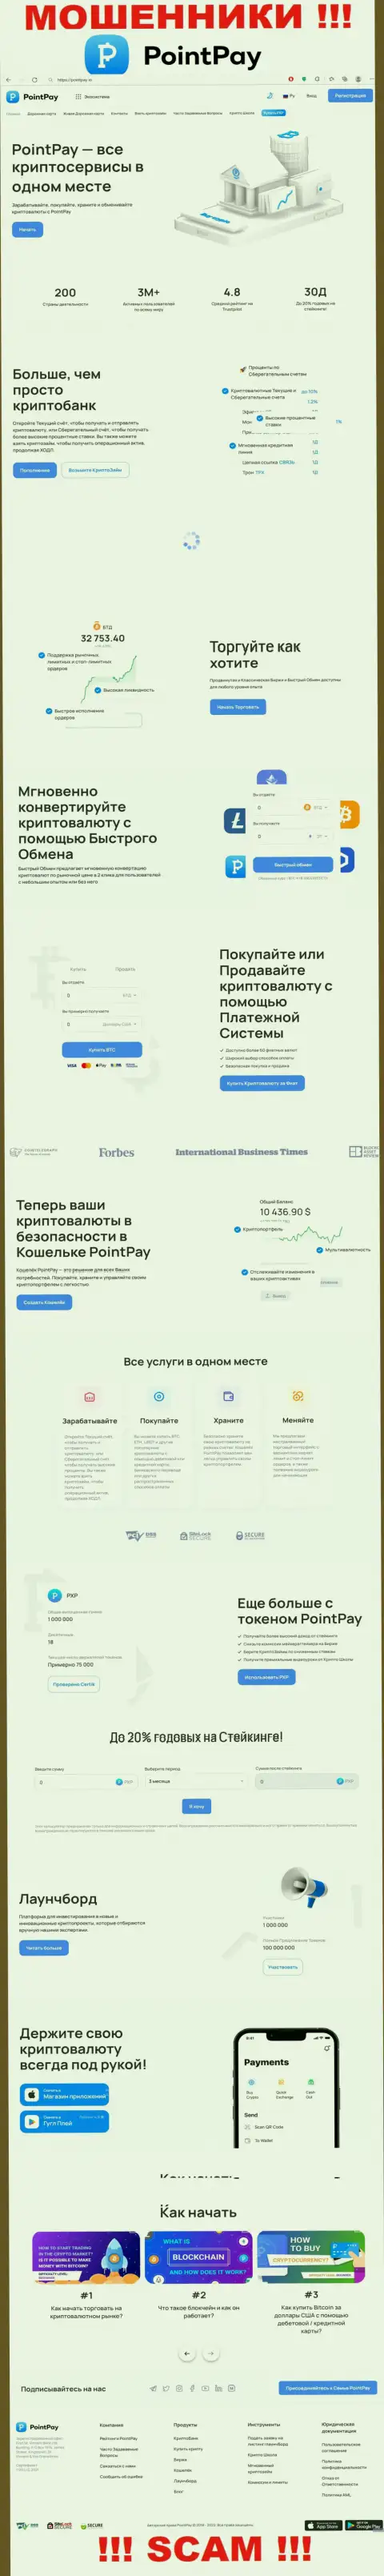 Скрин официального информационного ресурса PointPay Io, заполненного лживыми обещаниями